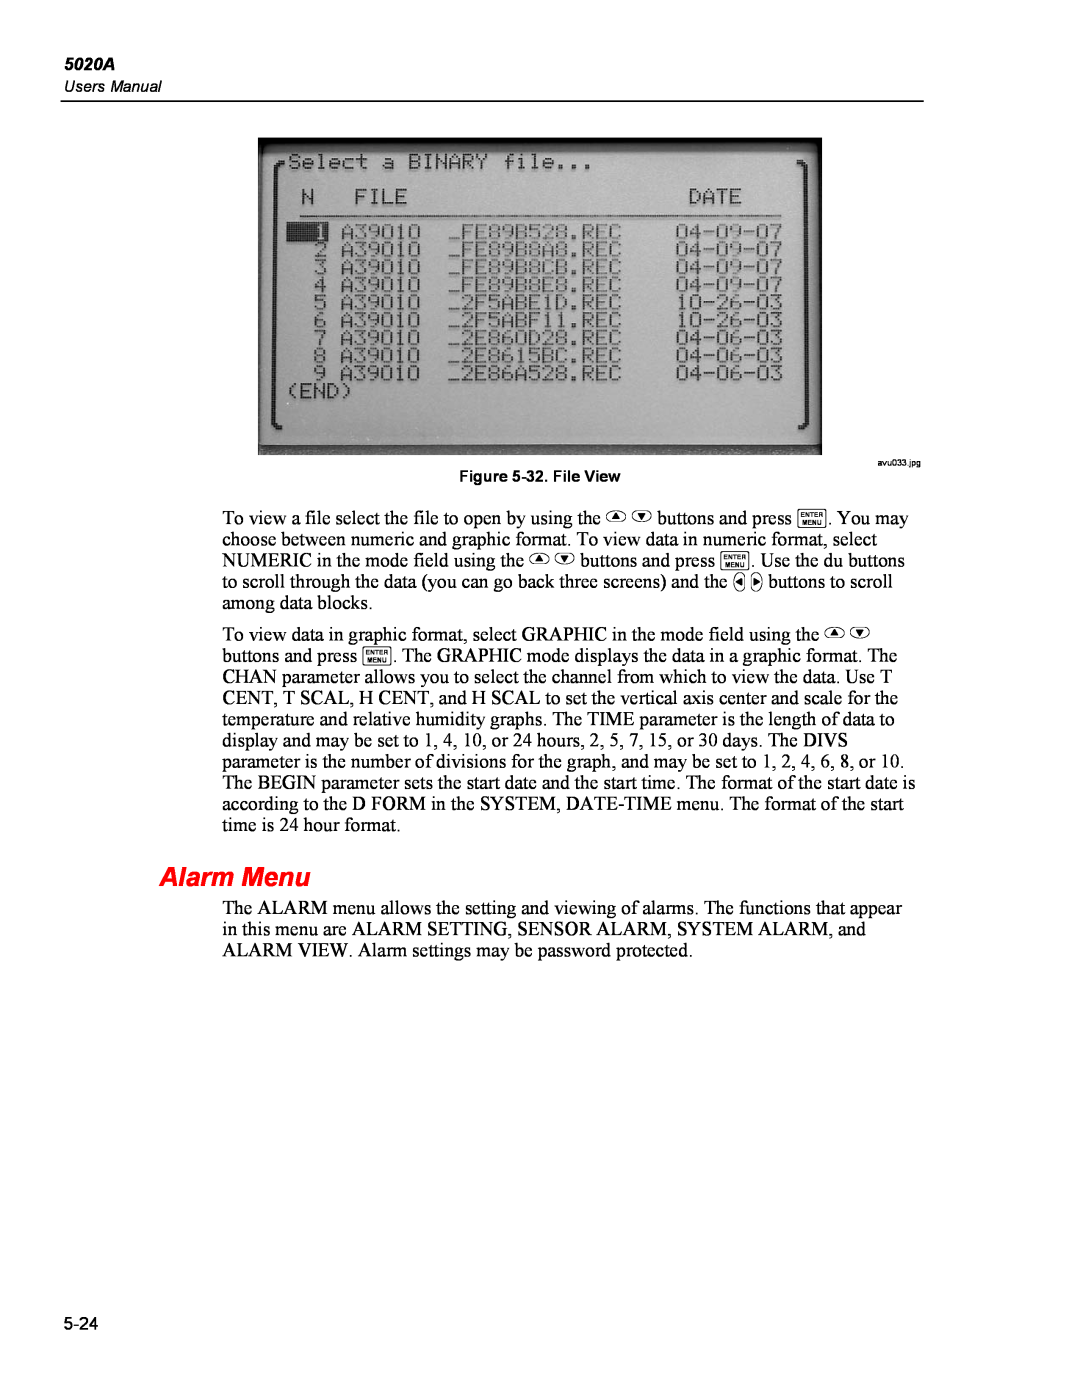 Fluke 5020A user manual Alarm Menu, 32. File View 